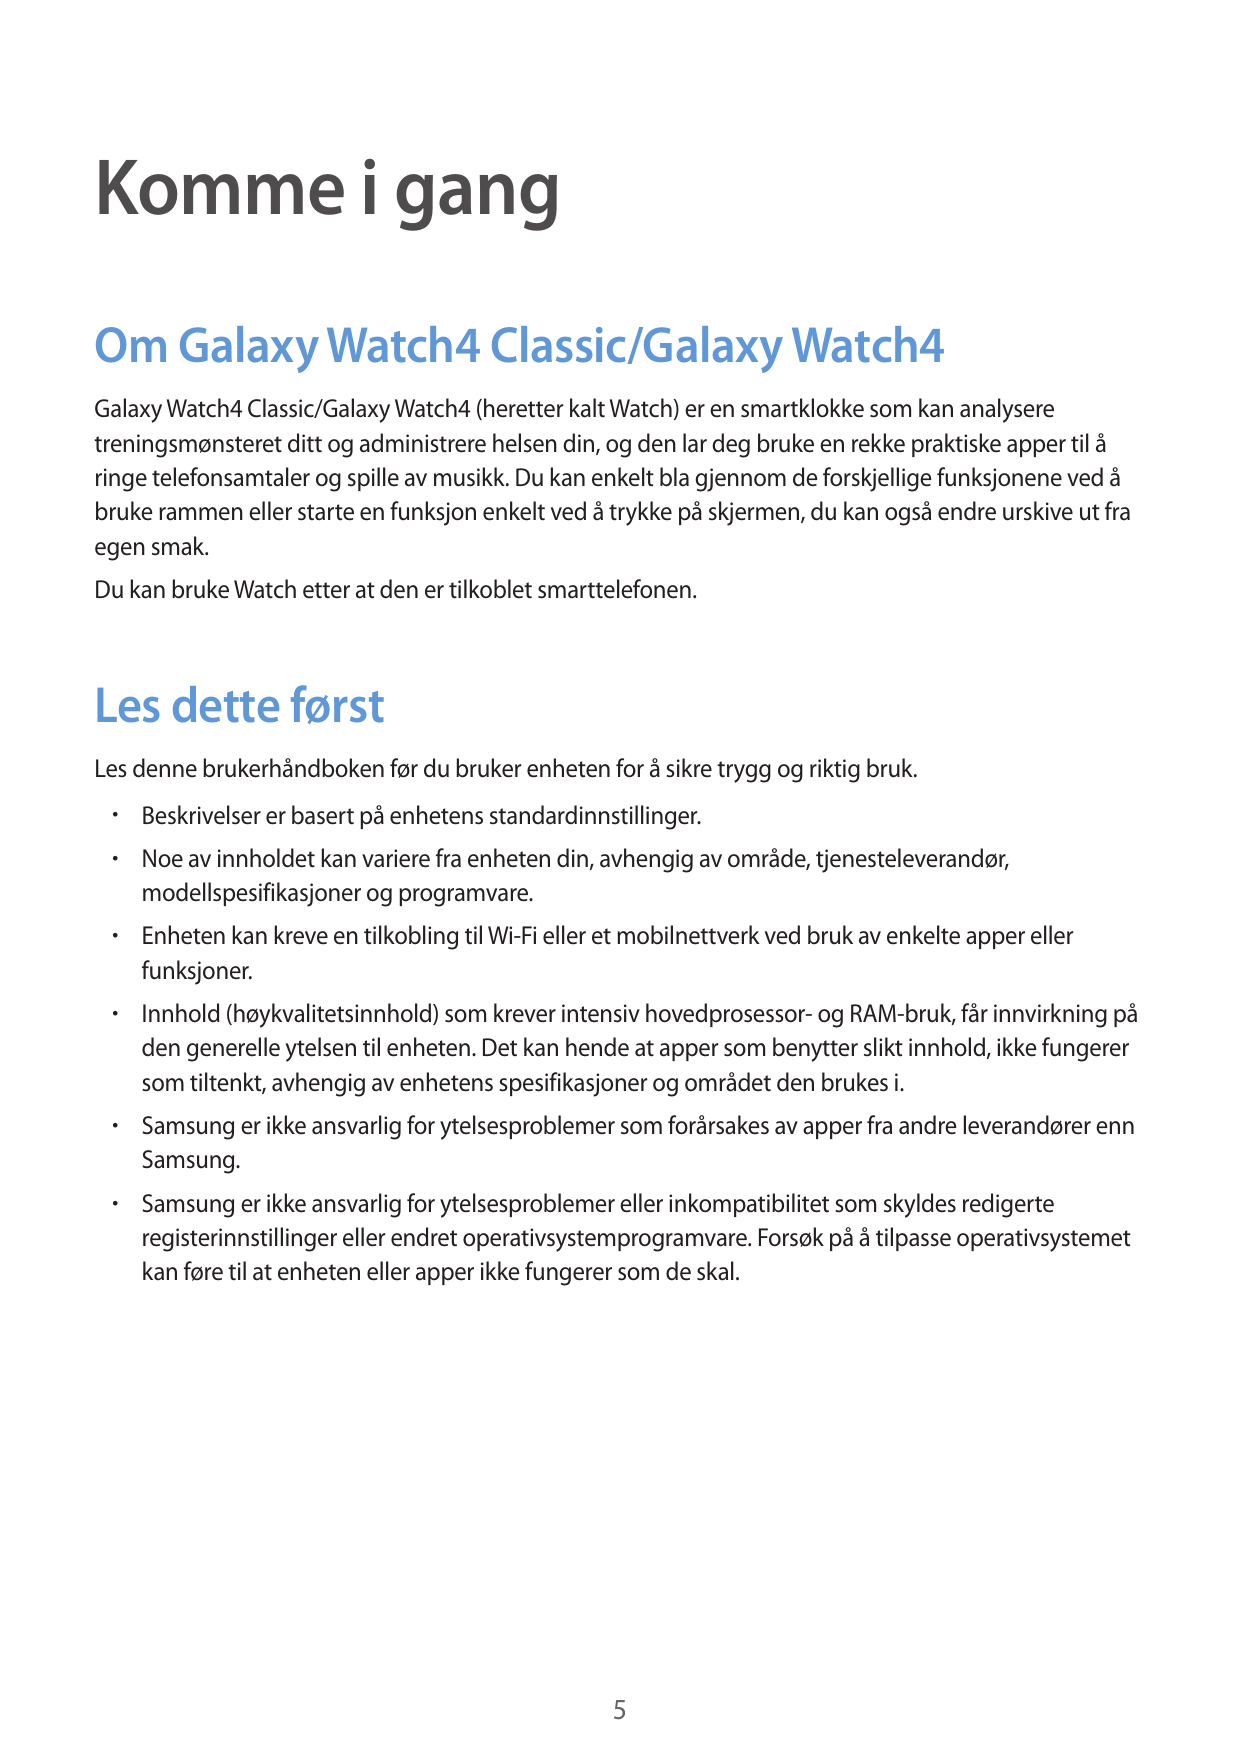 Komme i gangOm Galaxy Watch4 Classic/Galaxy Watch4Galaxy Watch4 Classic/Galaxy Watch4 (heretter kalt Watch) er en smartklokke so